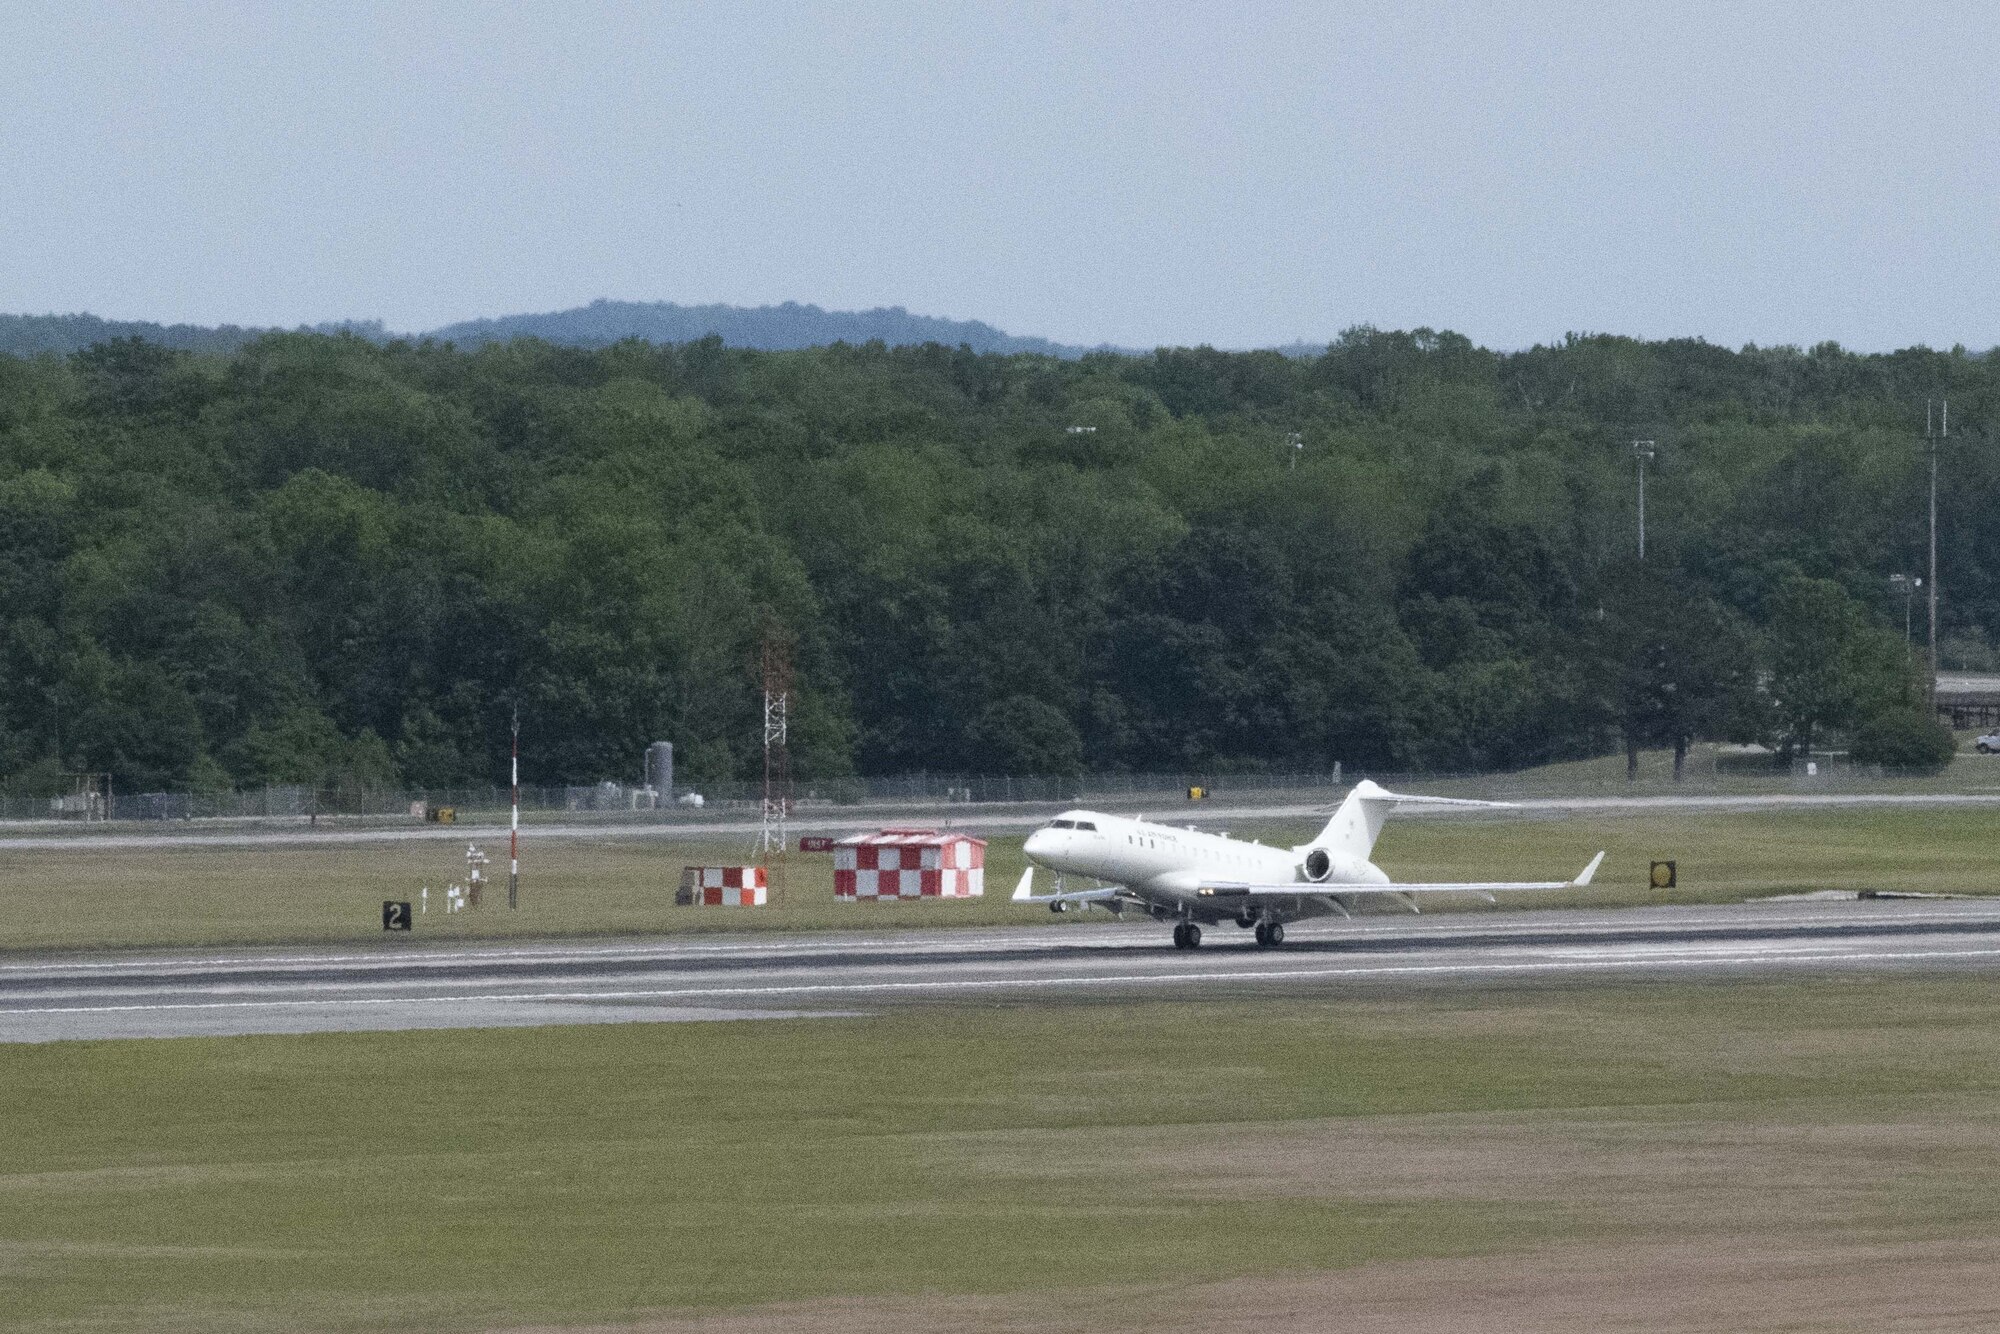 Airplane lands on runway